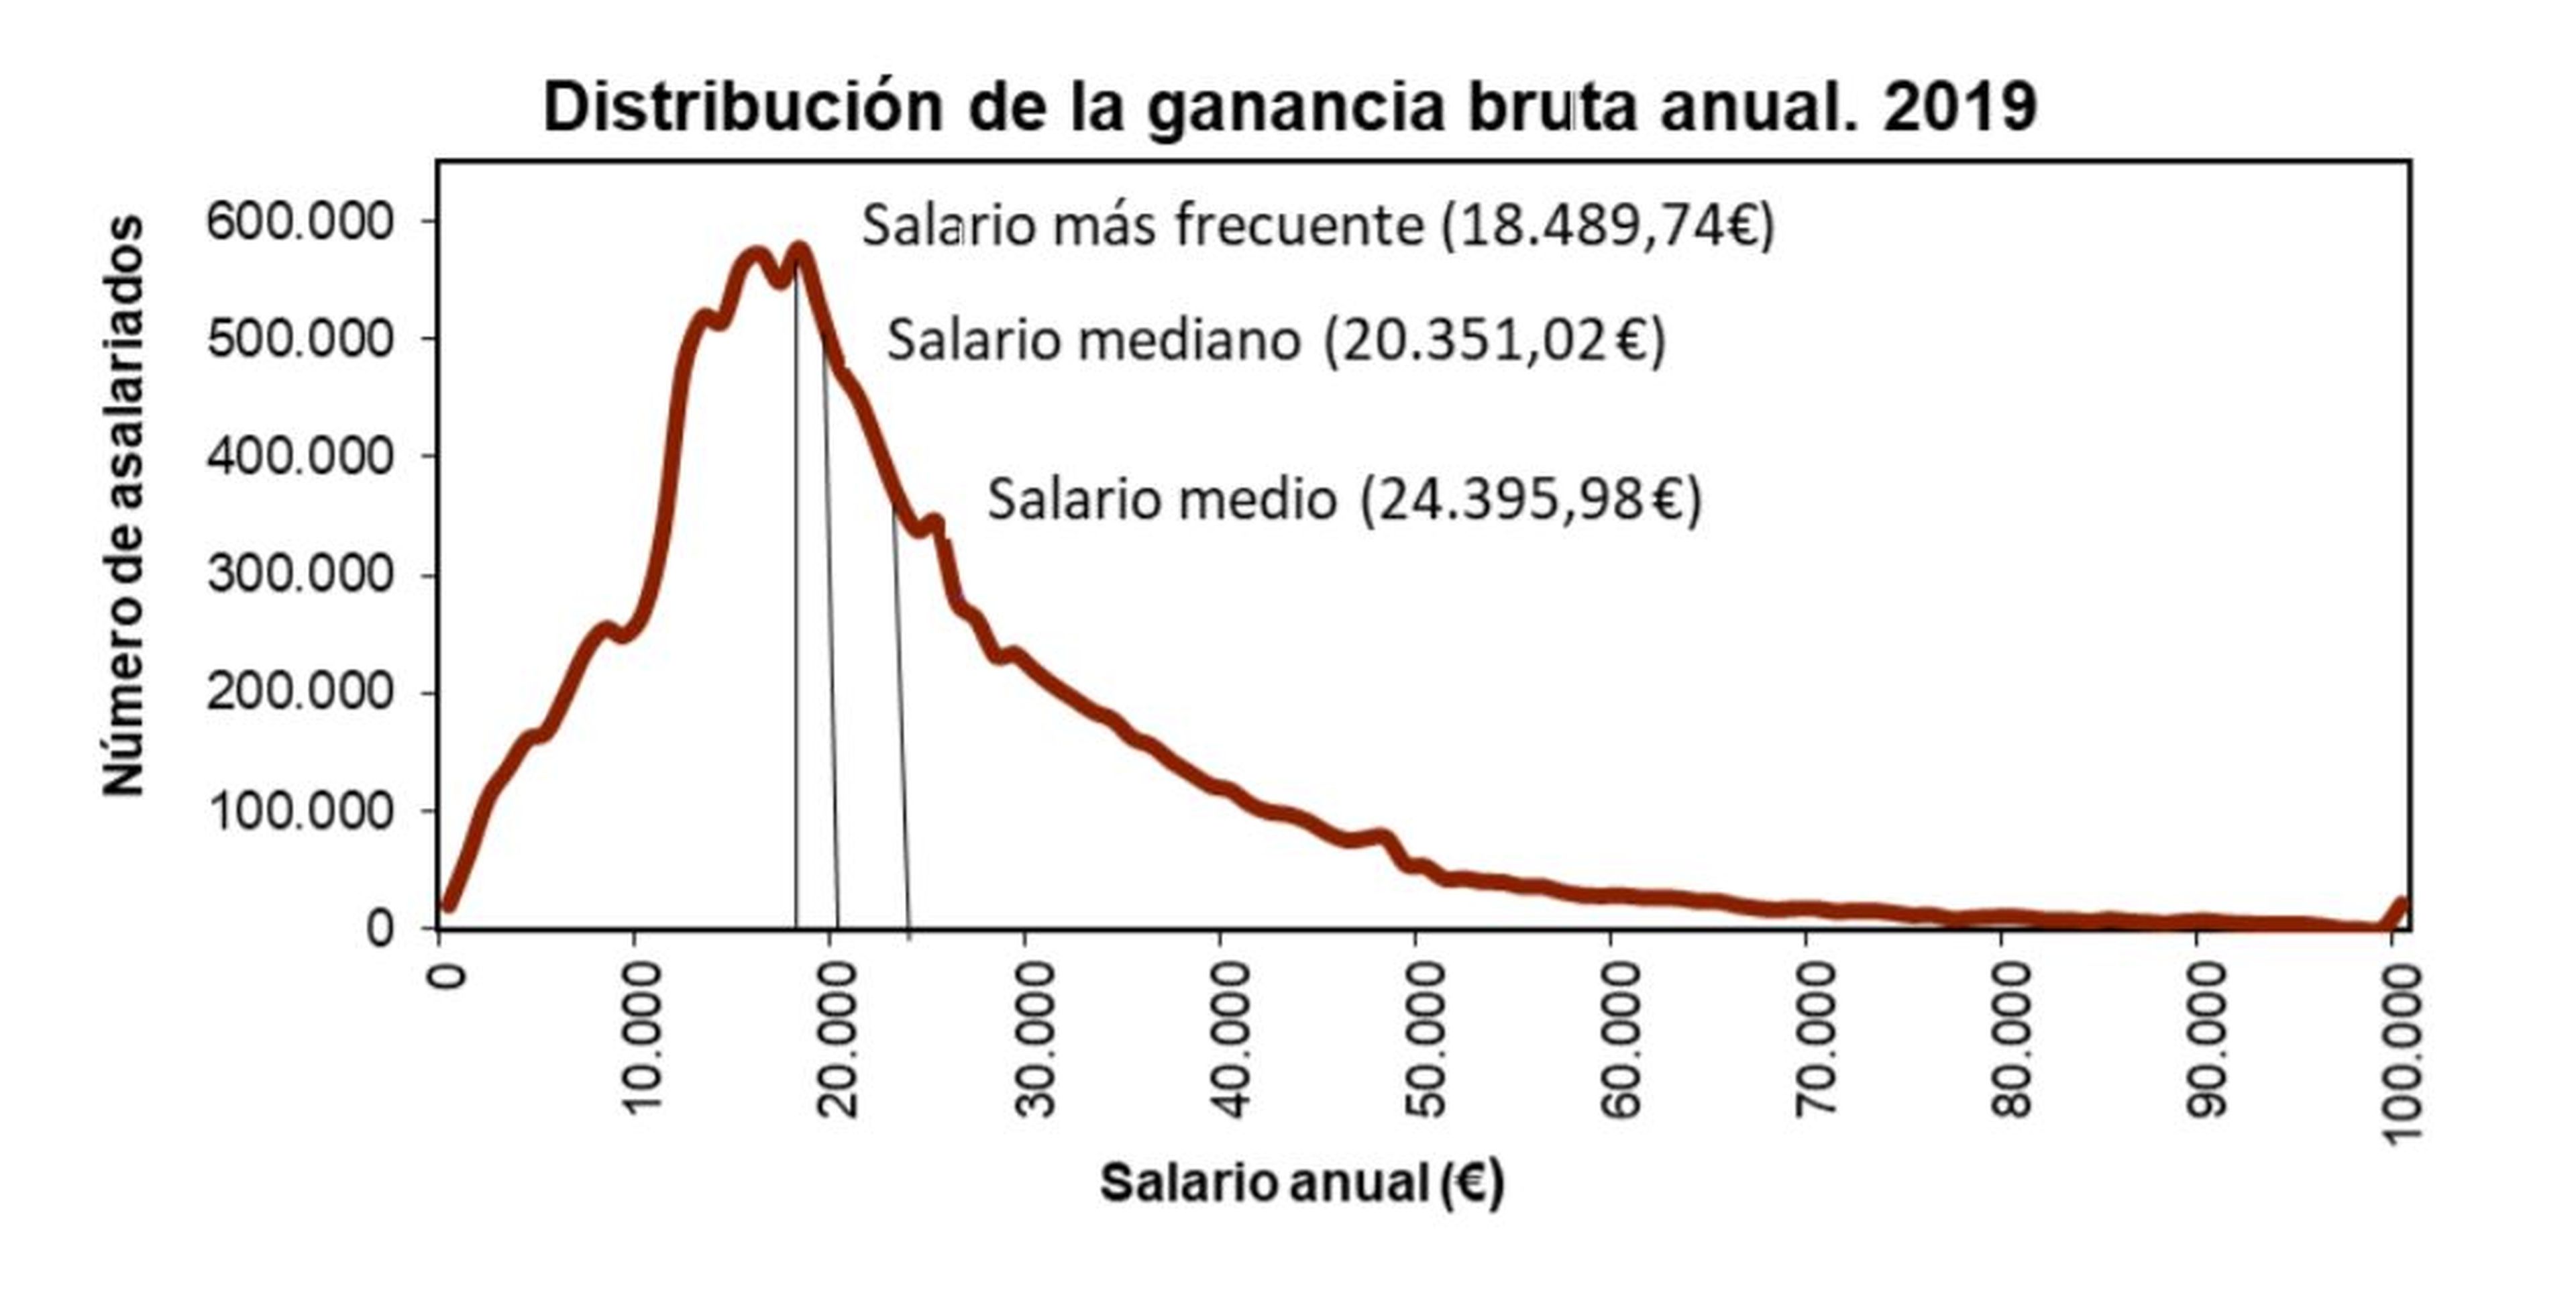 Fuente: Encuesta Anual de Estructura Salarial del INE.